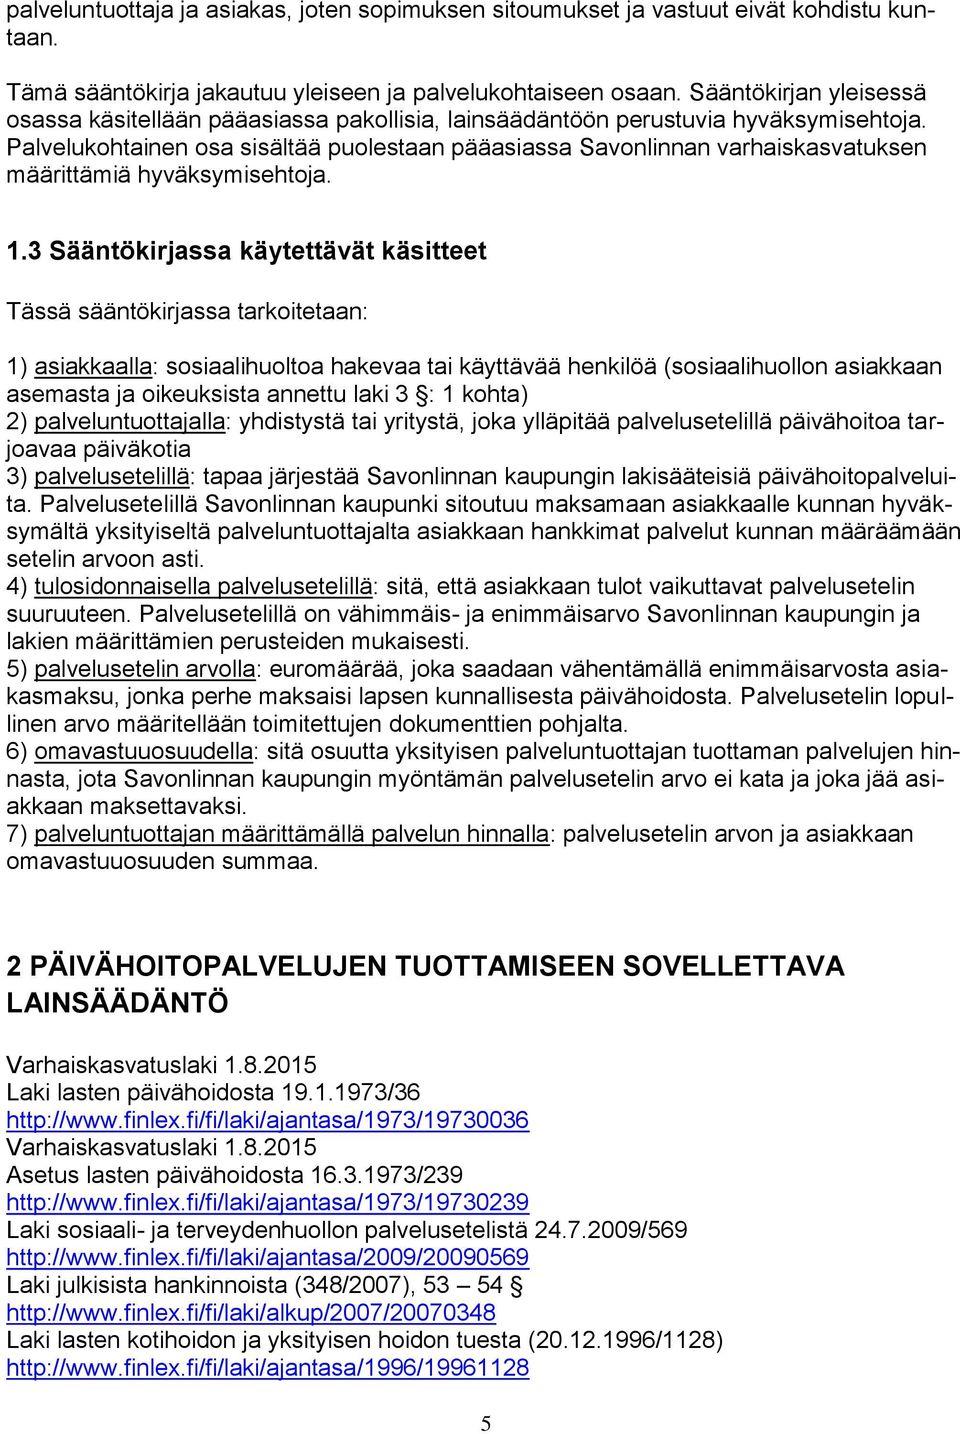 Palvelukohtainen osa sisältää puolestaan pääasiassa Savonlinnan varhaiskasvatuksen määrittämiä hyväksymisehtoja. 1.